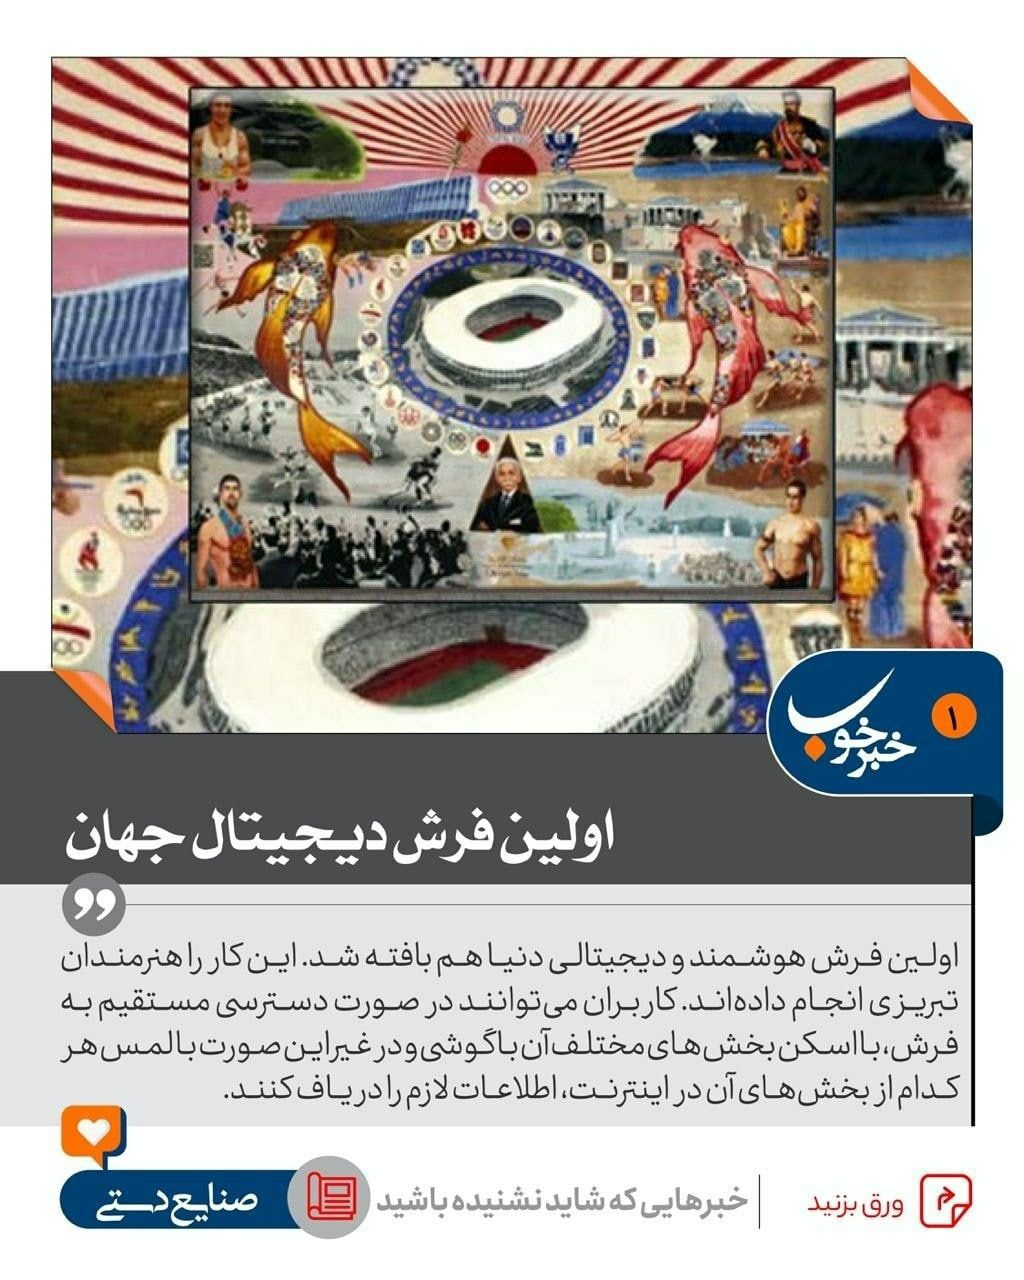 رونمایی از اولین فرش دیجیتال جهان در تبریز